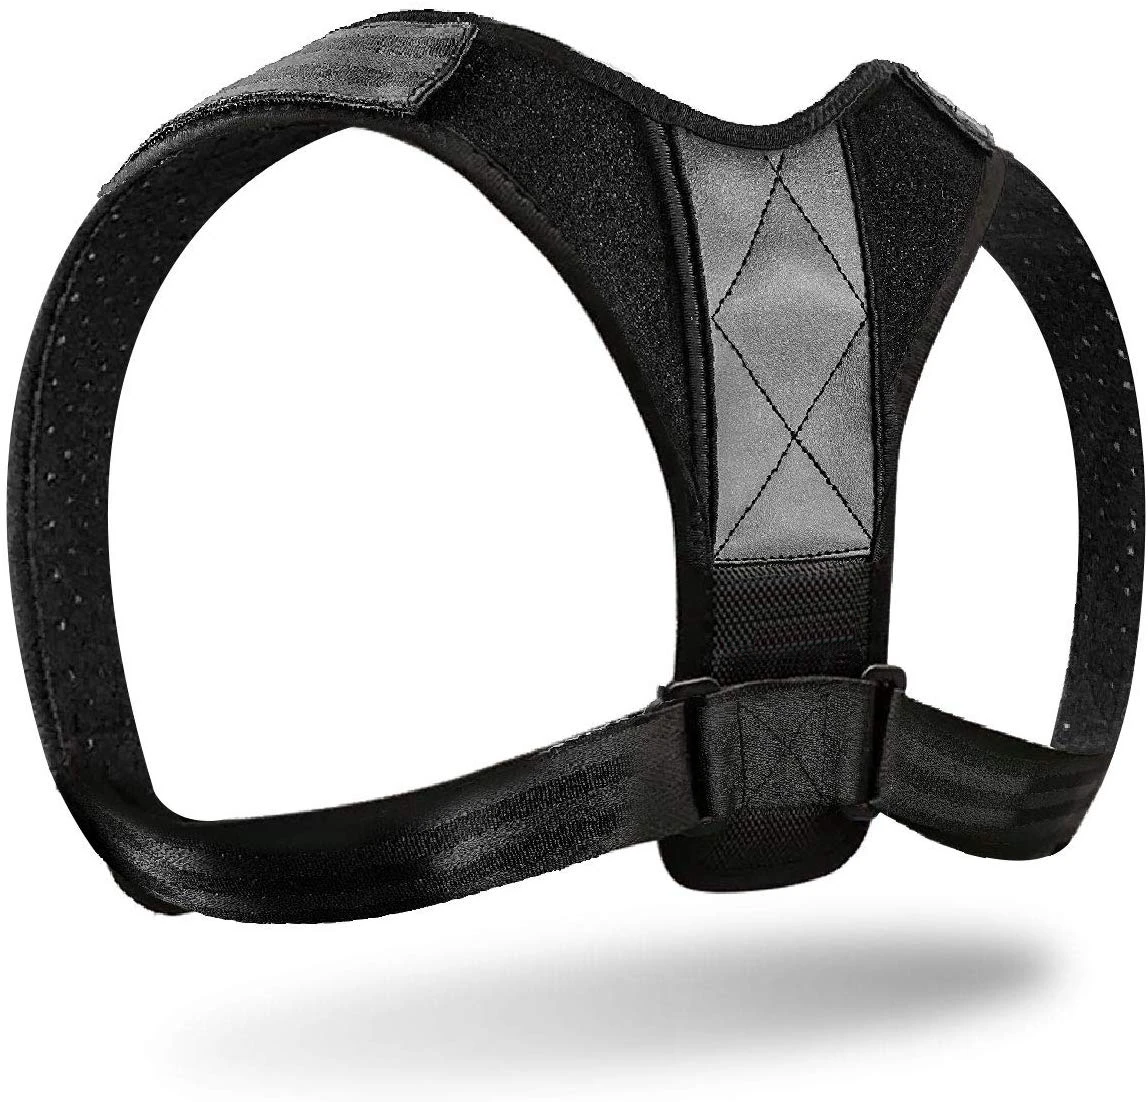 2020 Latest design hot selling adjustable posture corrector back belt support brace